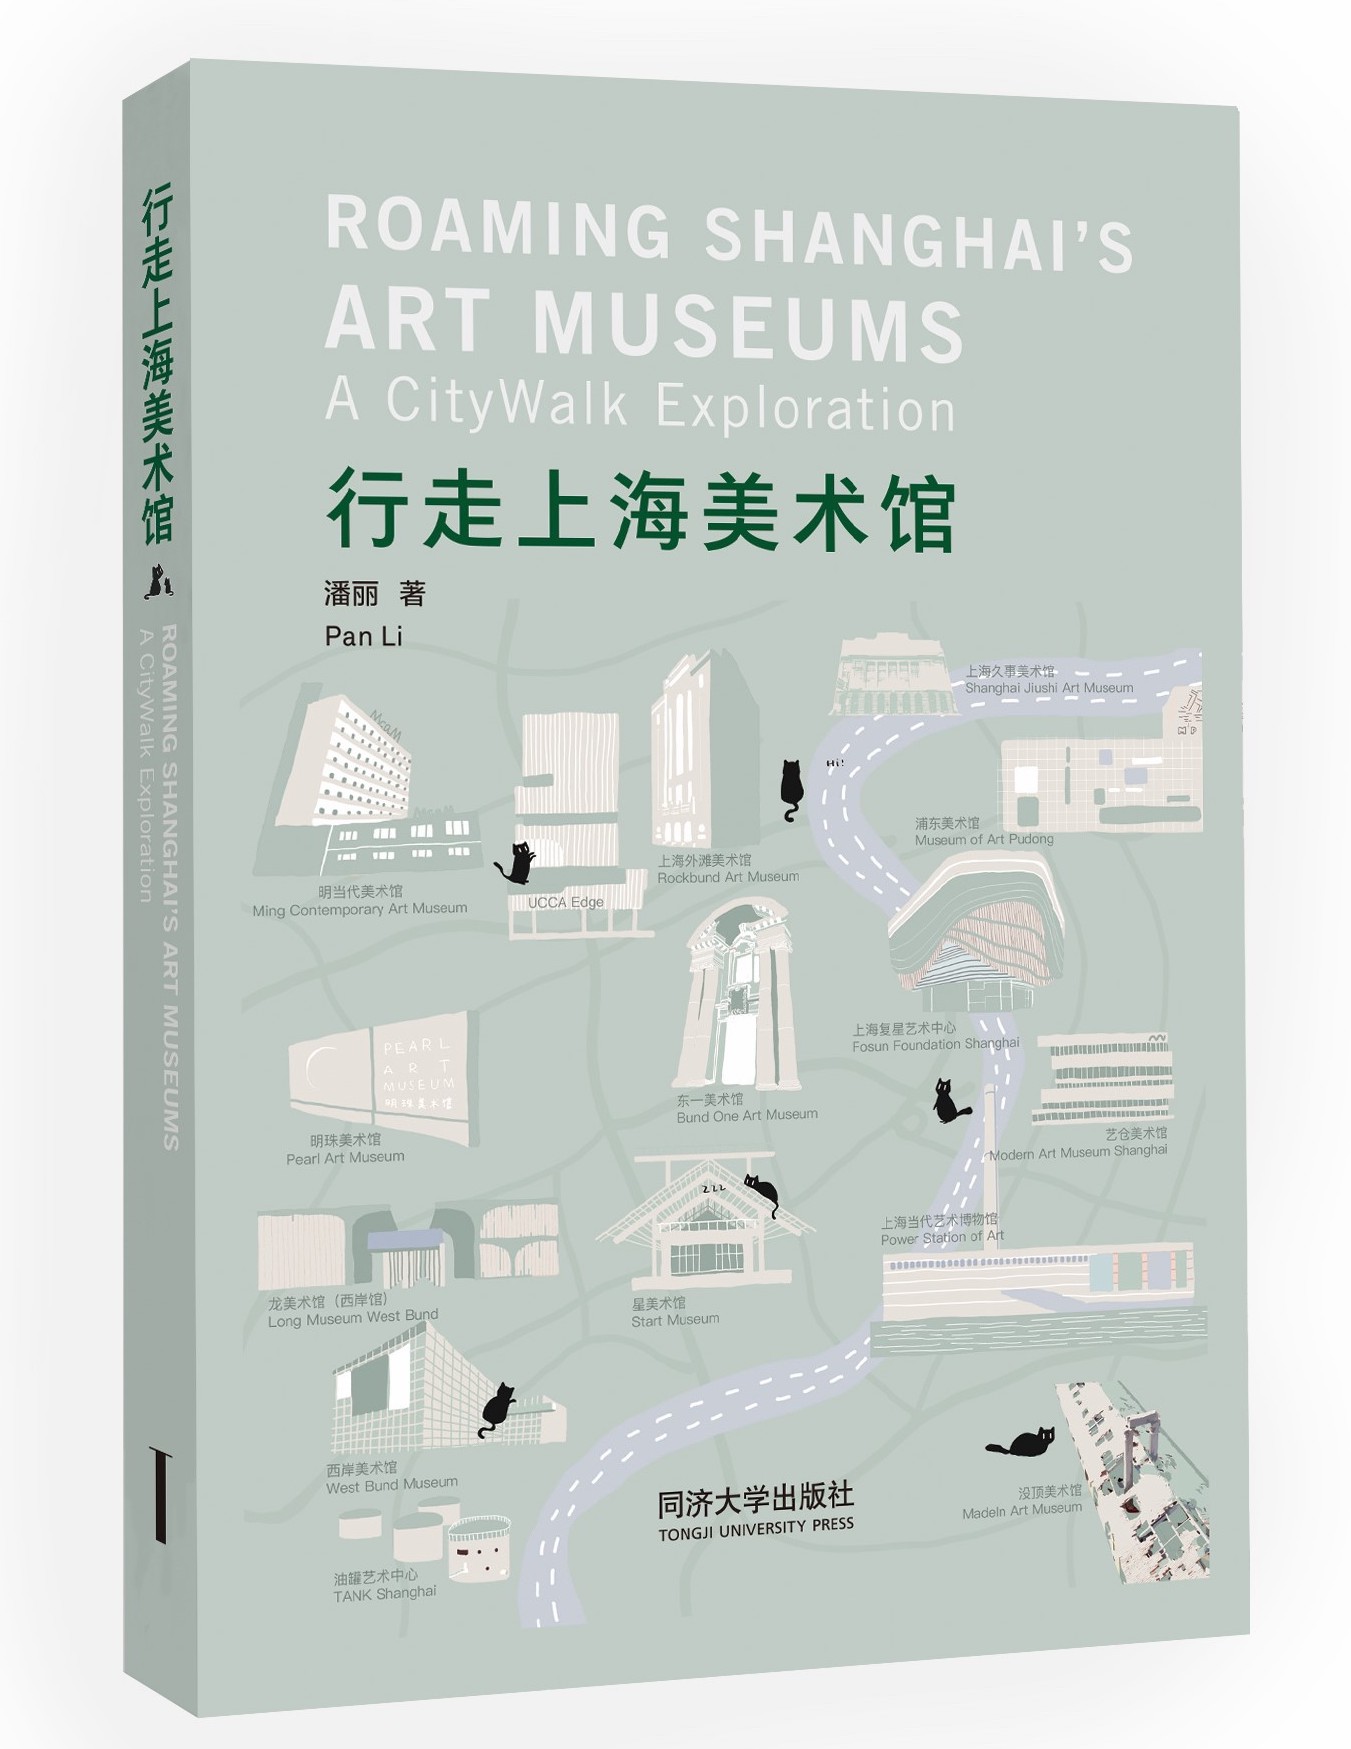 上海哪些美术馆值得畅游？这本书给出了线路图